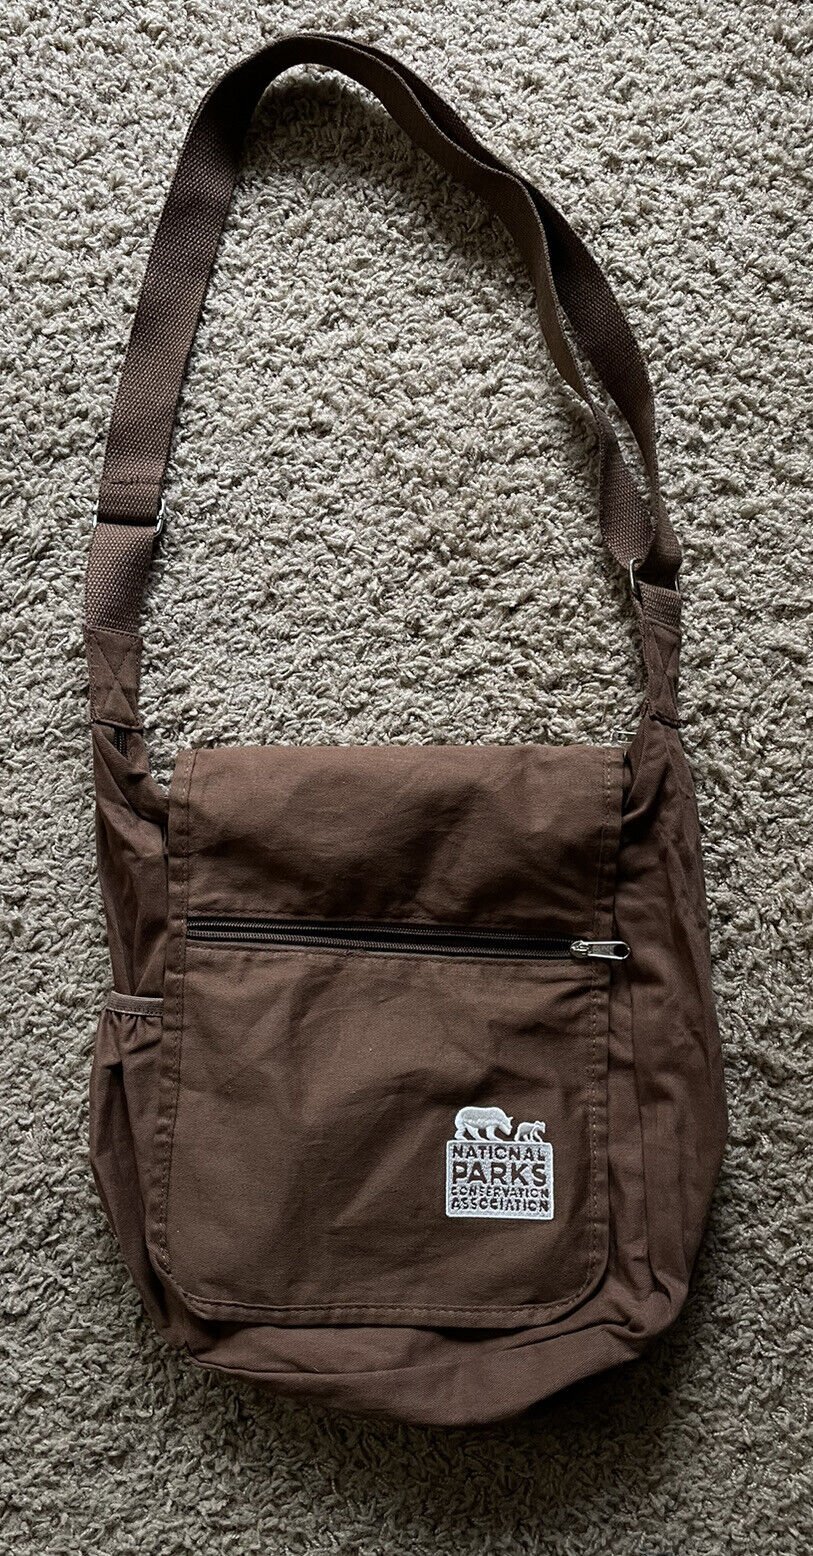 National Parks Conservation Association Brown Shoulder Bag Satchel w/ Zip Pocket